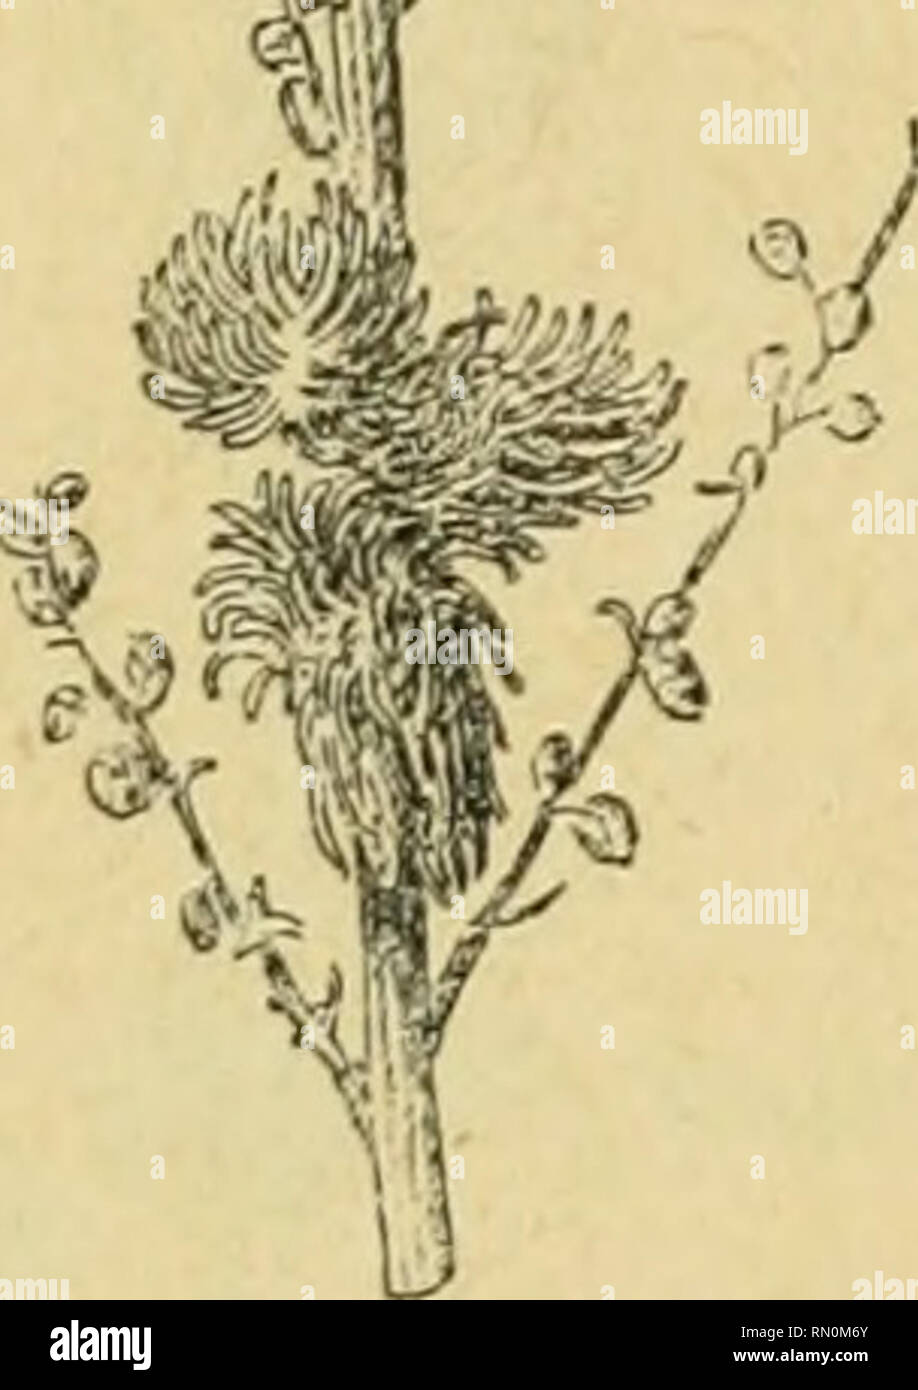 . Annales de la Société entomologique de France. Insects; Entomology. Les Zoocécidies du Sord de rAfri(jue. 177 Tunisie. Kairouan, le 30 octobre 189!) : G. Le ïestu, in Hoiiard. li&gt;U6'', p. G!), n&quot; o ; llHl, p. IGl, n&quot; 1 ; Colleclion cécidol. C. Houard, 11'^ 180. '- ii / -V Artemisia campestris. Hliopnlomijia tubifex (n&quot; 308). Fig. 3.JÎ» (rt). — Uameau portant deux groupes de galles (d'ap. nal.; gr. 0,8).. :{()'.l. Cècidomijide]. — Petites galles subsphériques, de 3 à .&quot;&gt; mill. de diamètre [ig. 360, 361), en général déprimées dans leur région su- périeure, qui présen Stock Photo